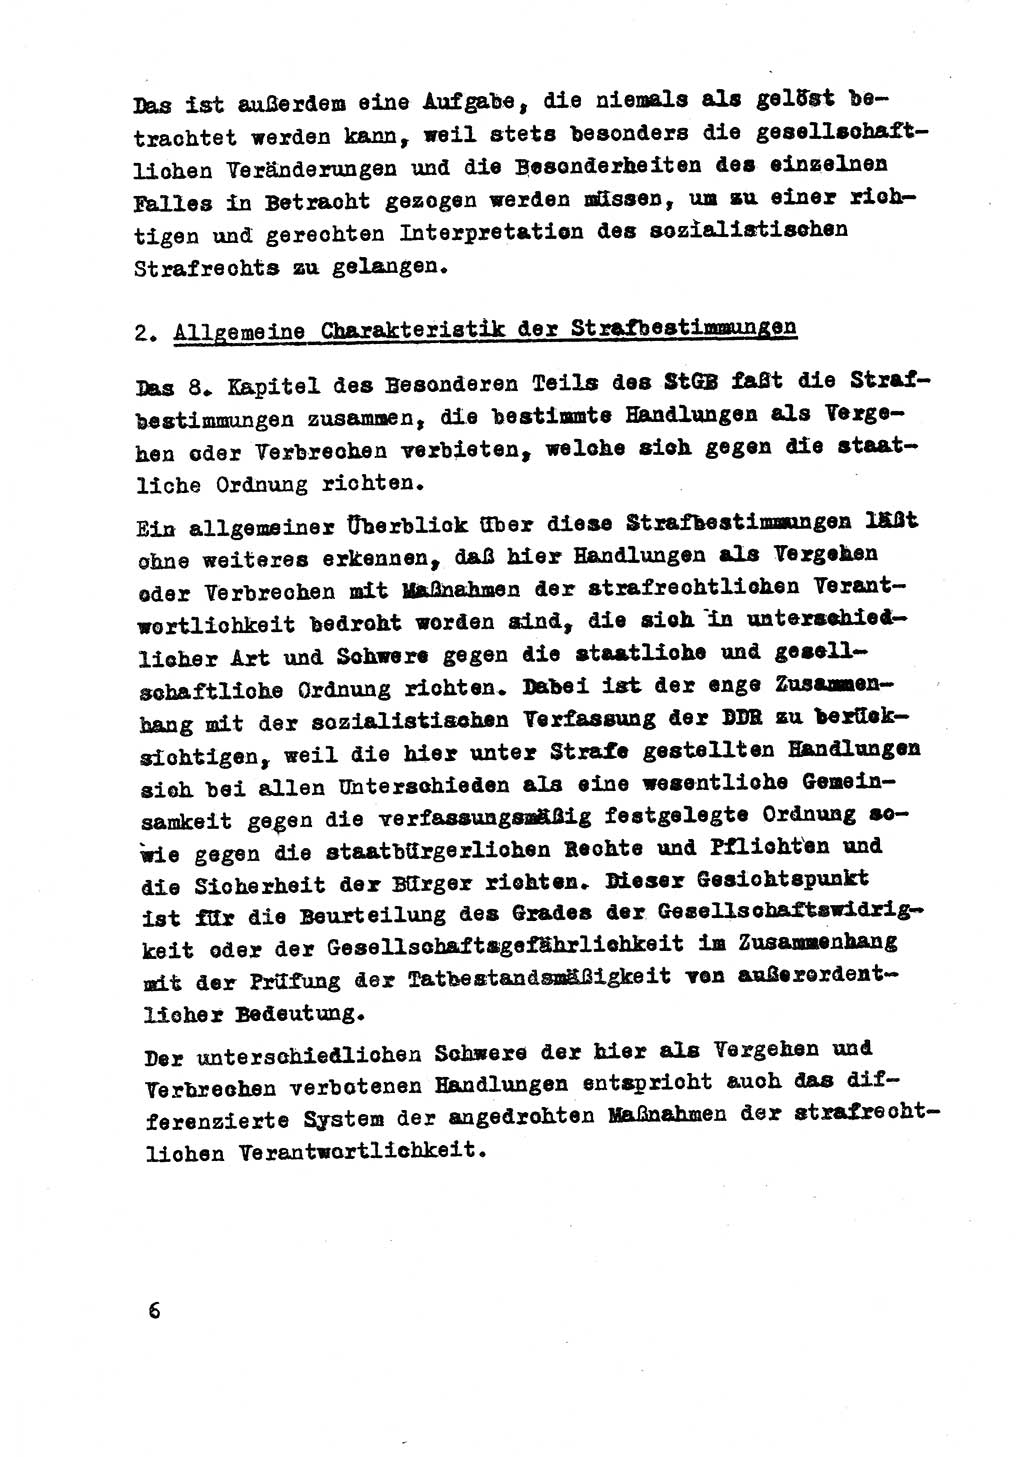 Strafrecht der DDR (Deutsche Demokratische Republik), Besonderer Teil, Lehrmaterial, Heft 8 1970, Seite 6 (Strafr. DDR BT Lehrmat. H. 8 1970, S. 6)